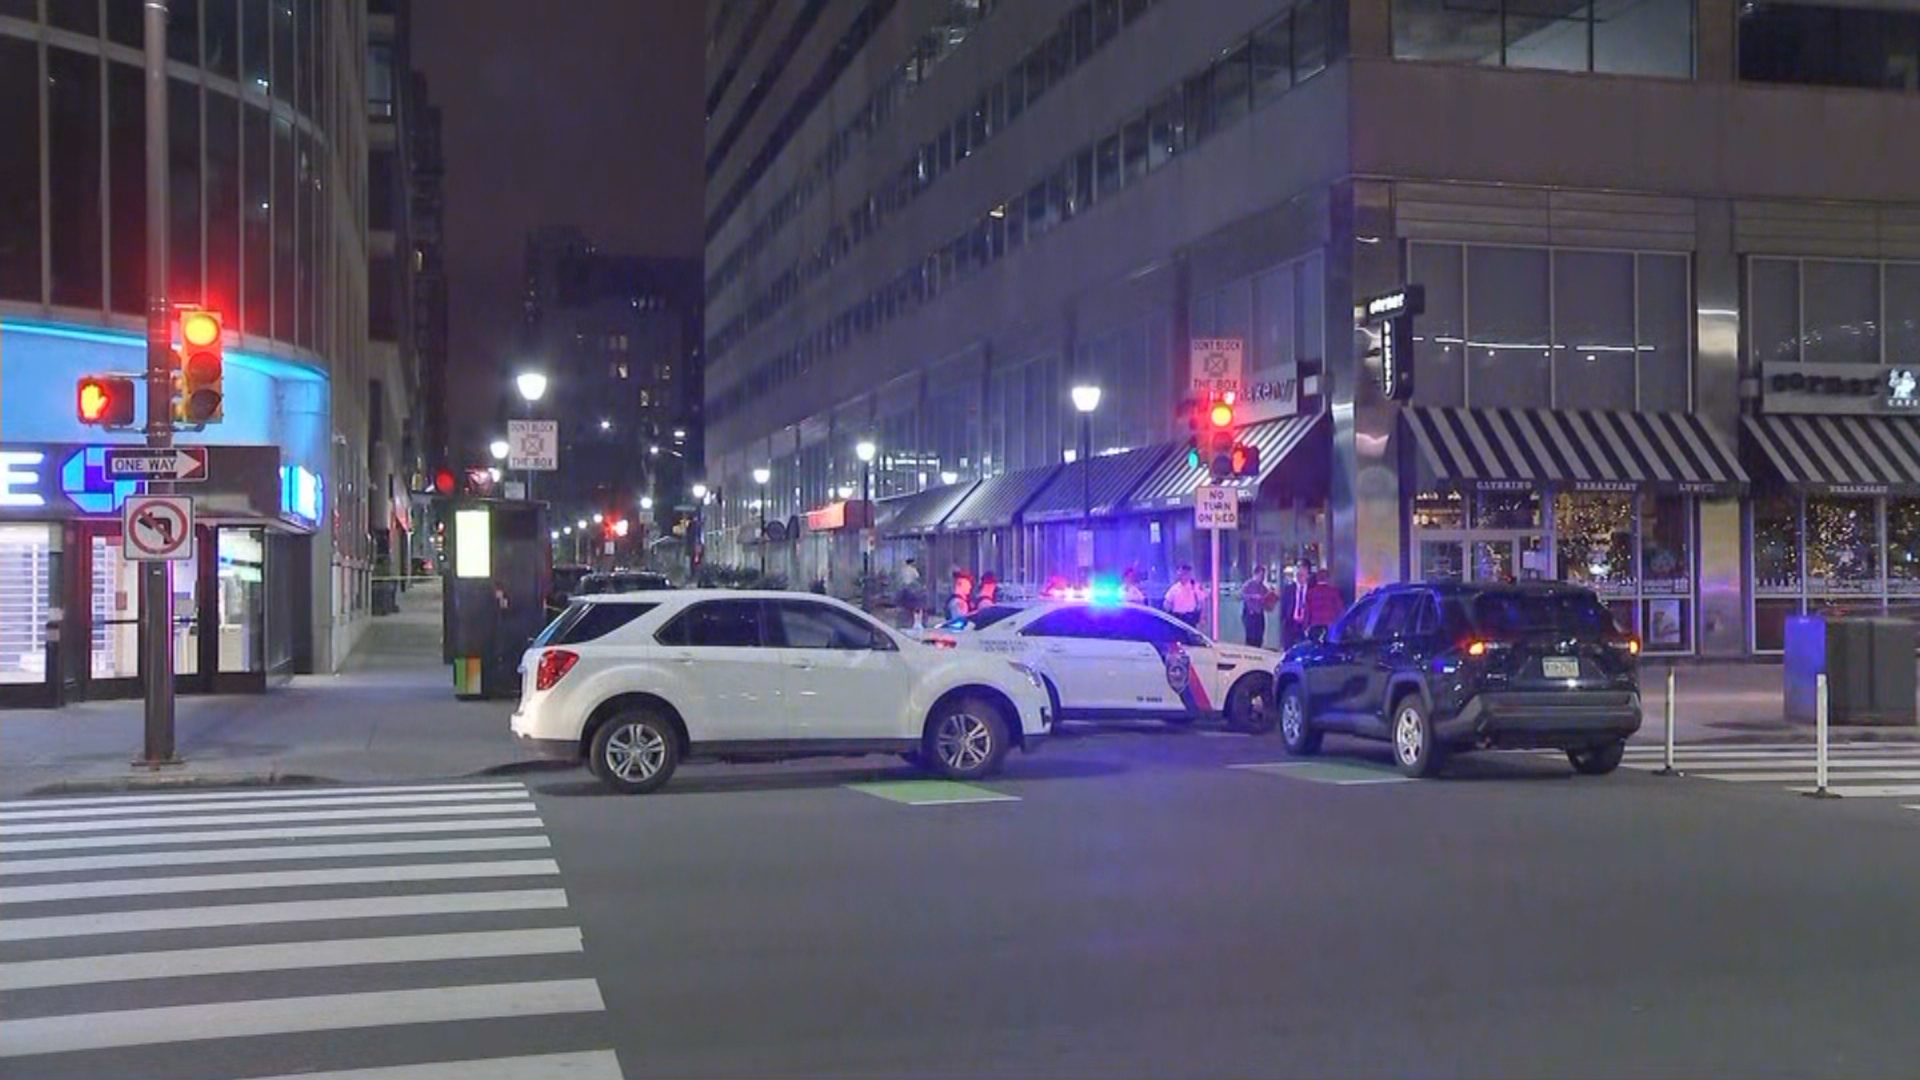 Sedikitnya 15 Tembakan Ditembak Di Pusat Kota Drive-By Shooting Yang Membuat Pemuda Terluka, Bisnis Penuh Peluru – CBS Philly